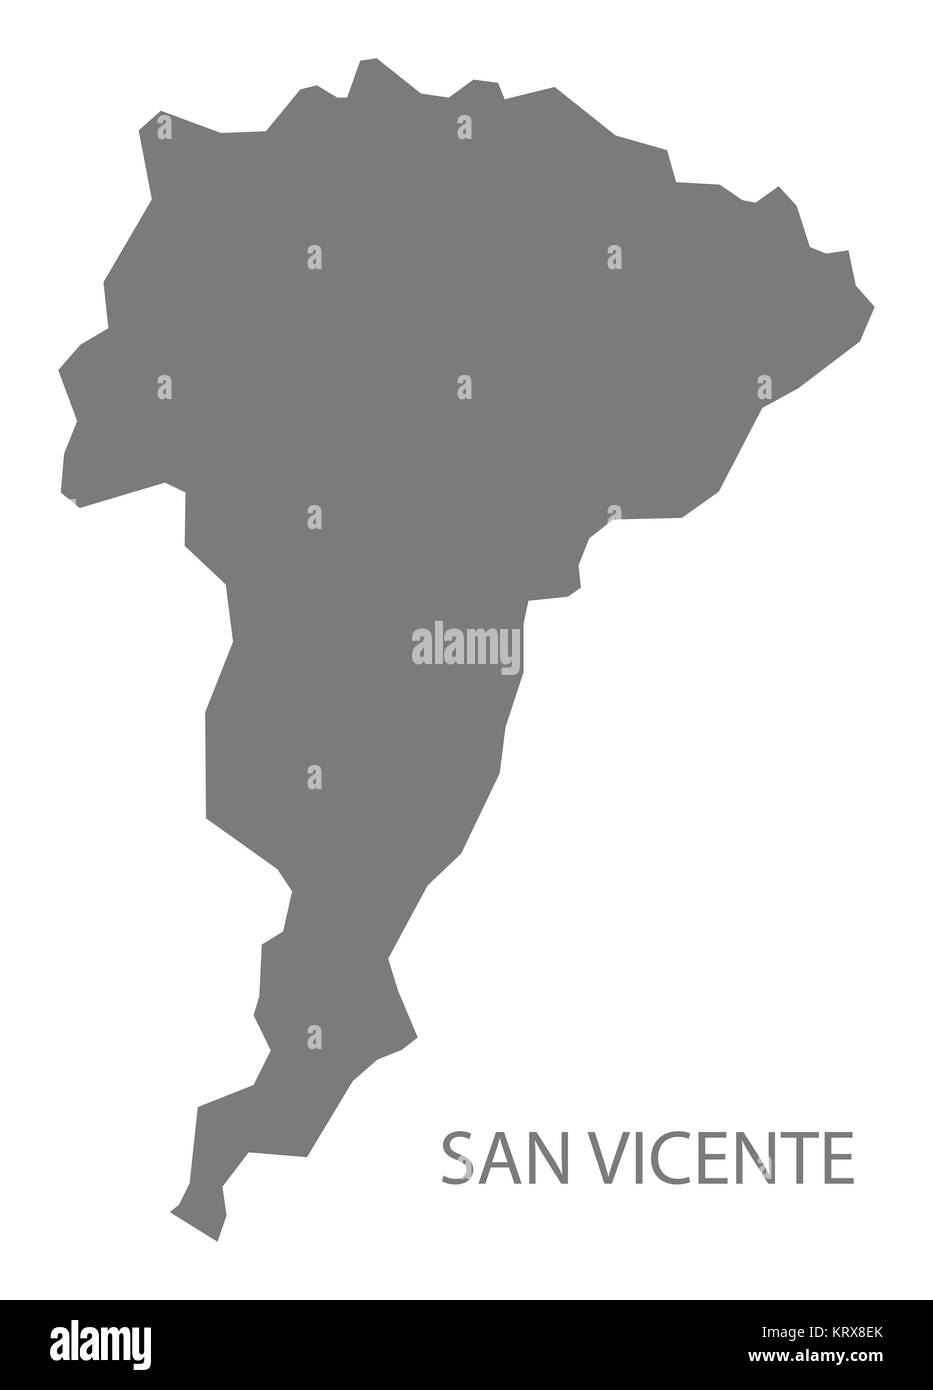 San Vicente El Salvador Map grey Stock Photo